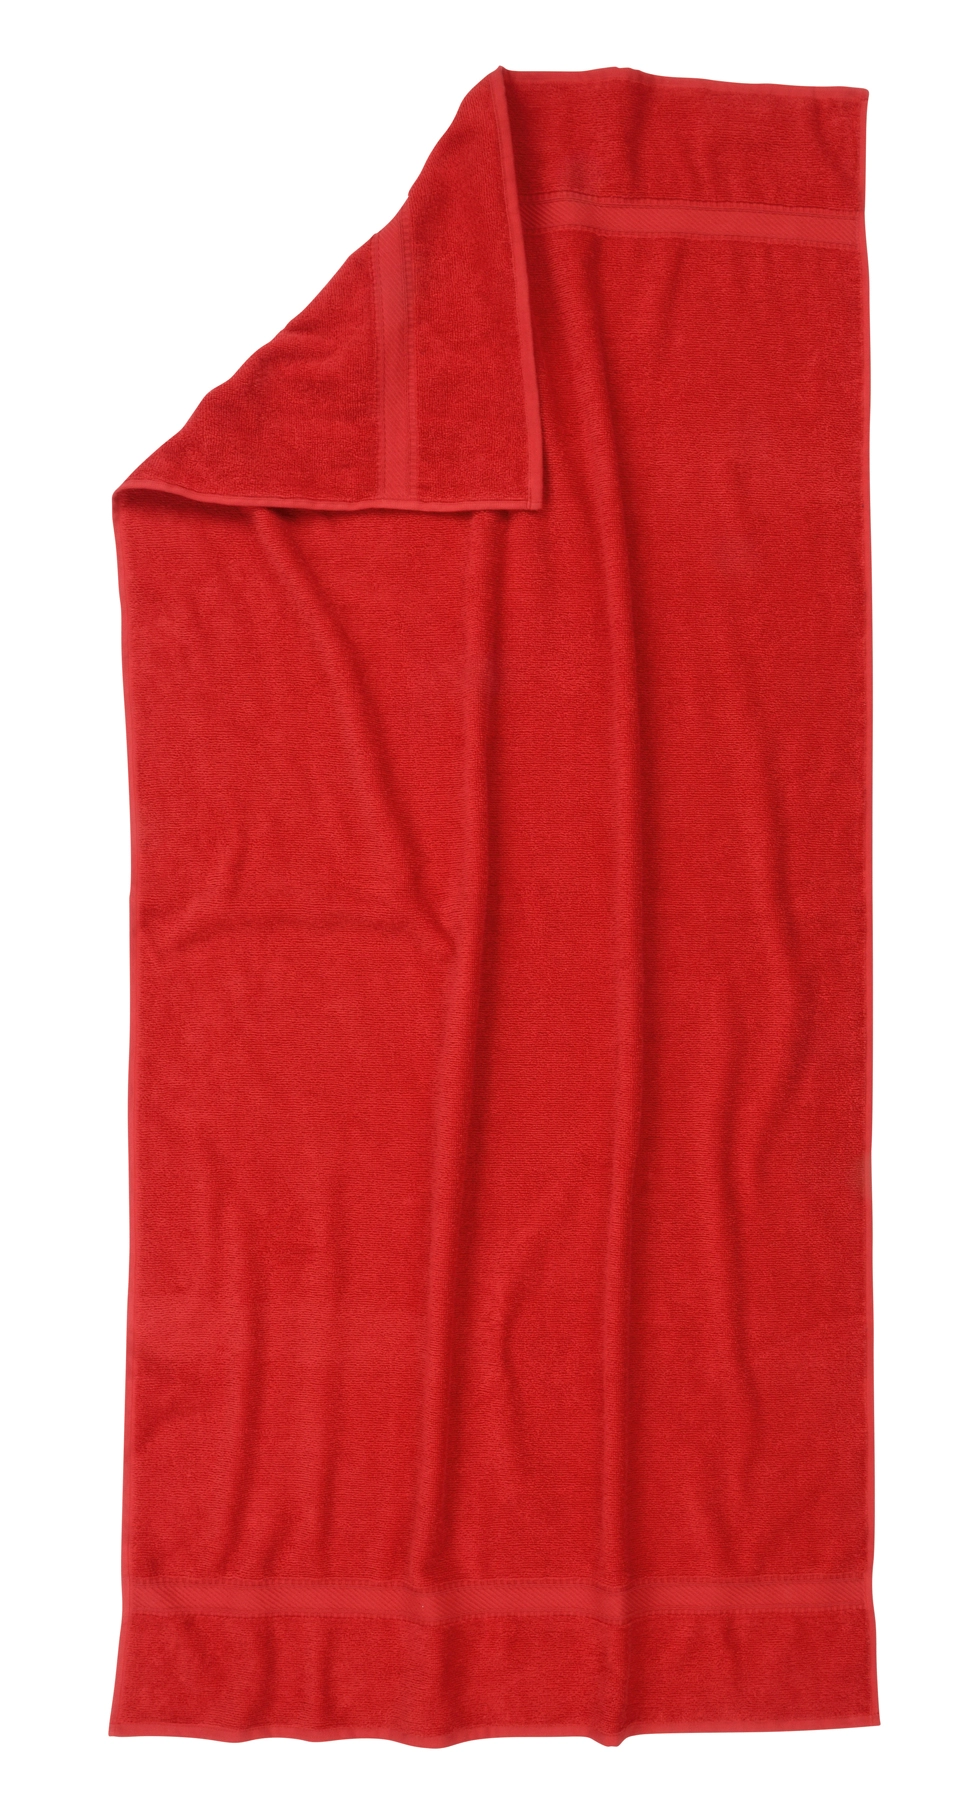 Ręcznik plażowy SUMMER TRIP, czerwony 56-0605113